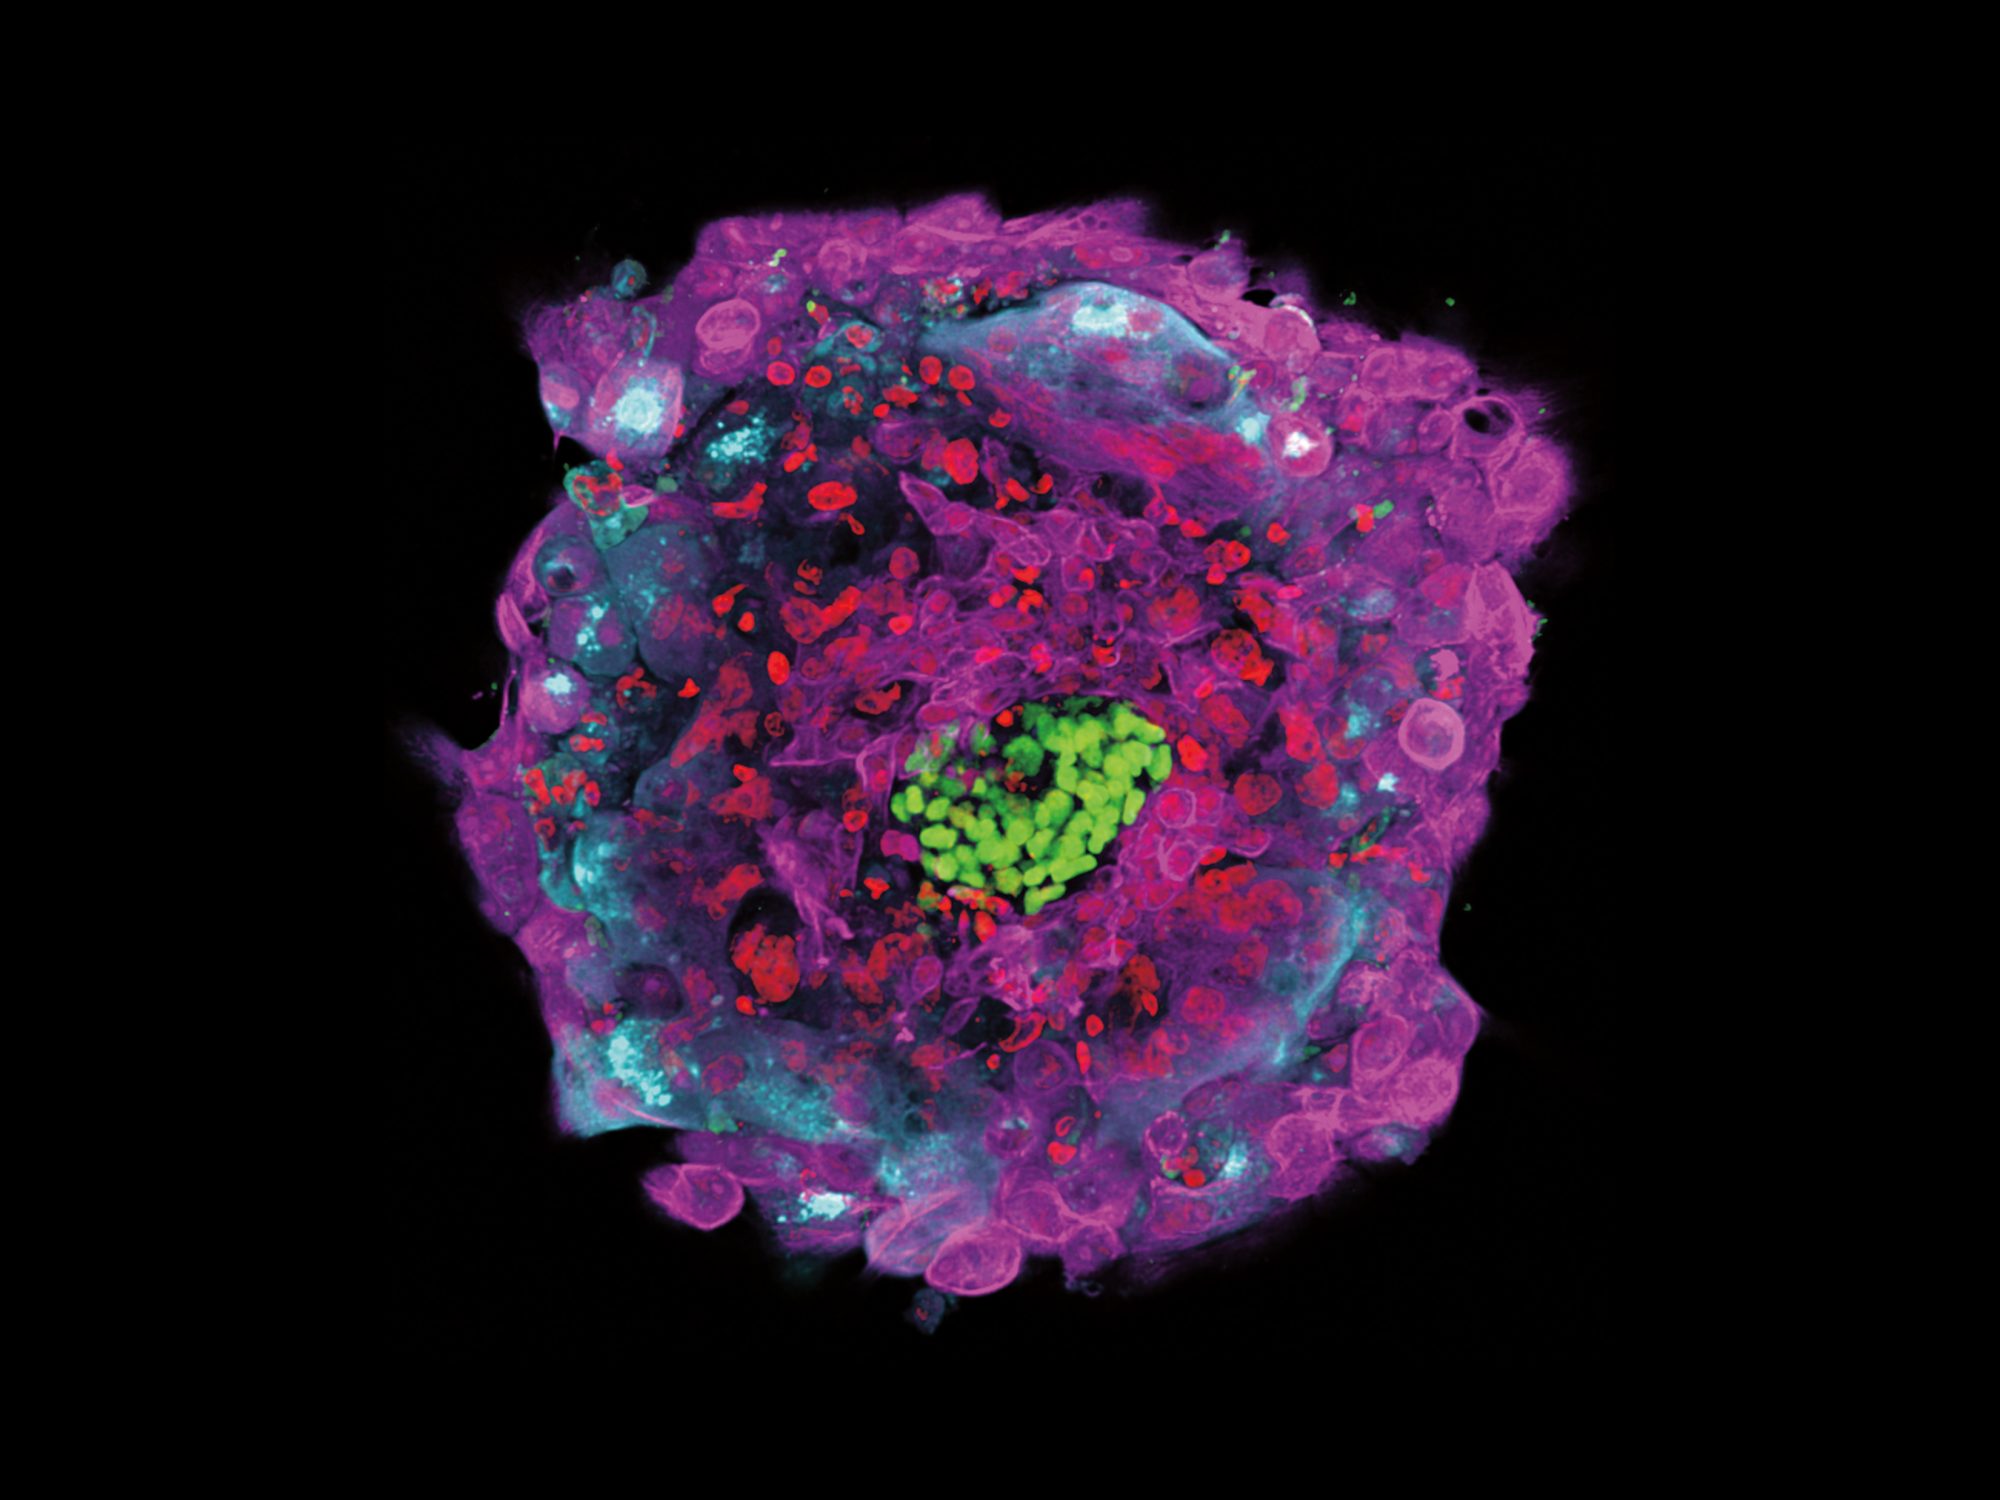 An attached human embryo 12 days after fertilization.